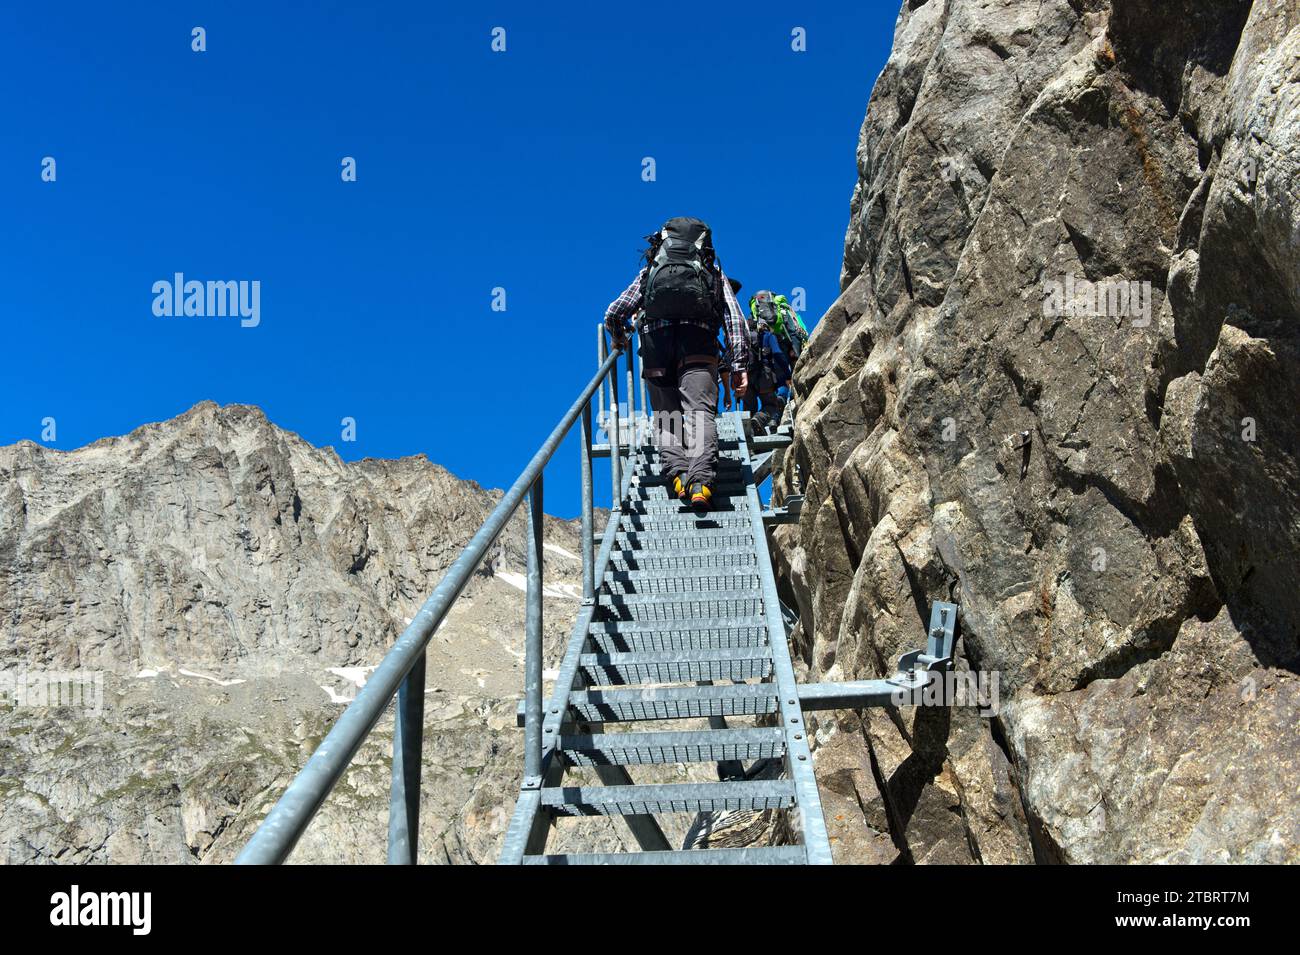 Gli escursionisti salgono i gradini di metallo su una parete rocciosa fino al rifugio Konkordiahütte, regione dell'Aletsch, Oberland Bernese, Svizzera Foto Stock